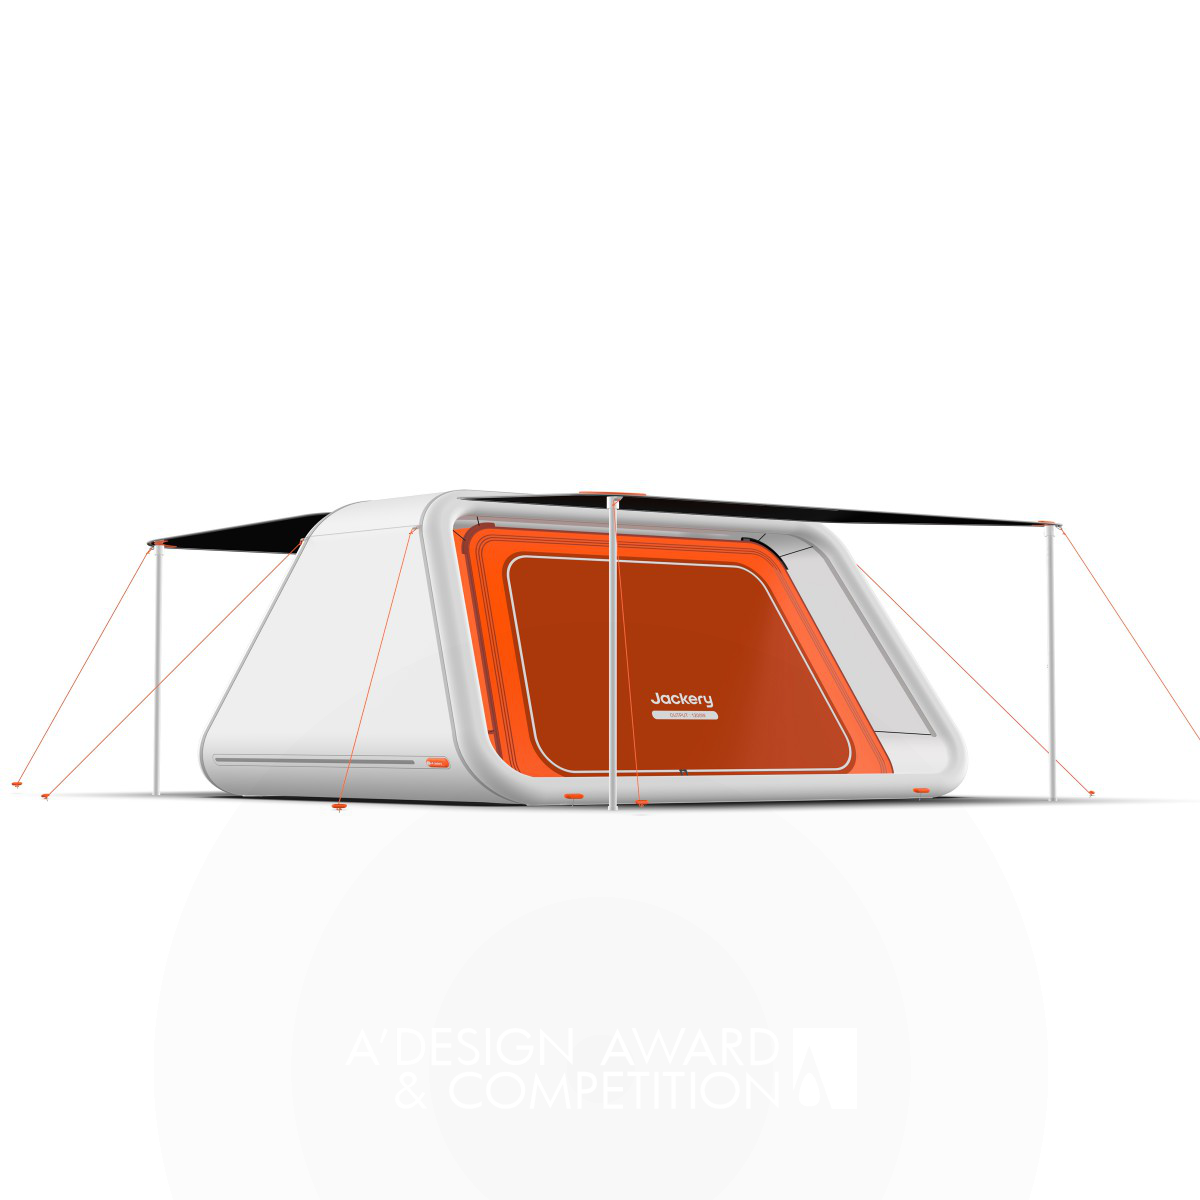 캠핑의 미래: 태양광 발전을 통한 지속 가능한 캠핑 경험